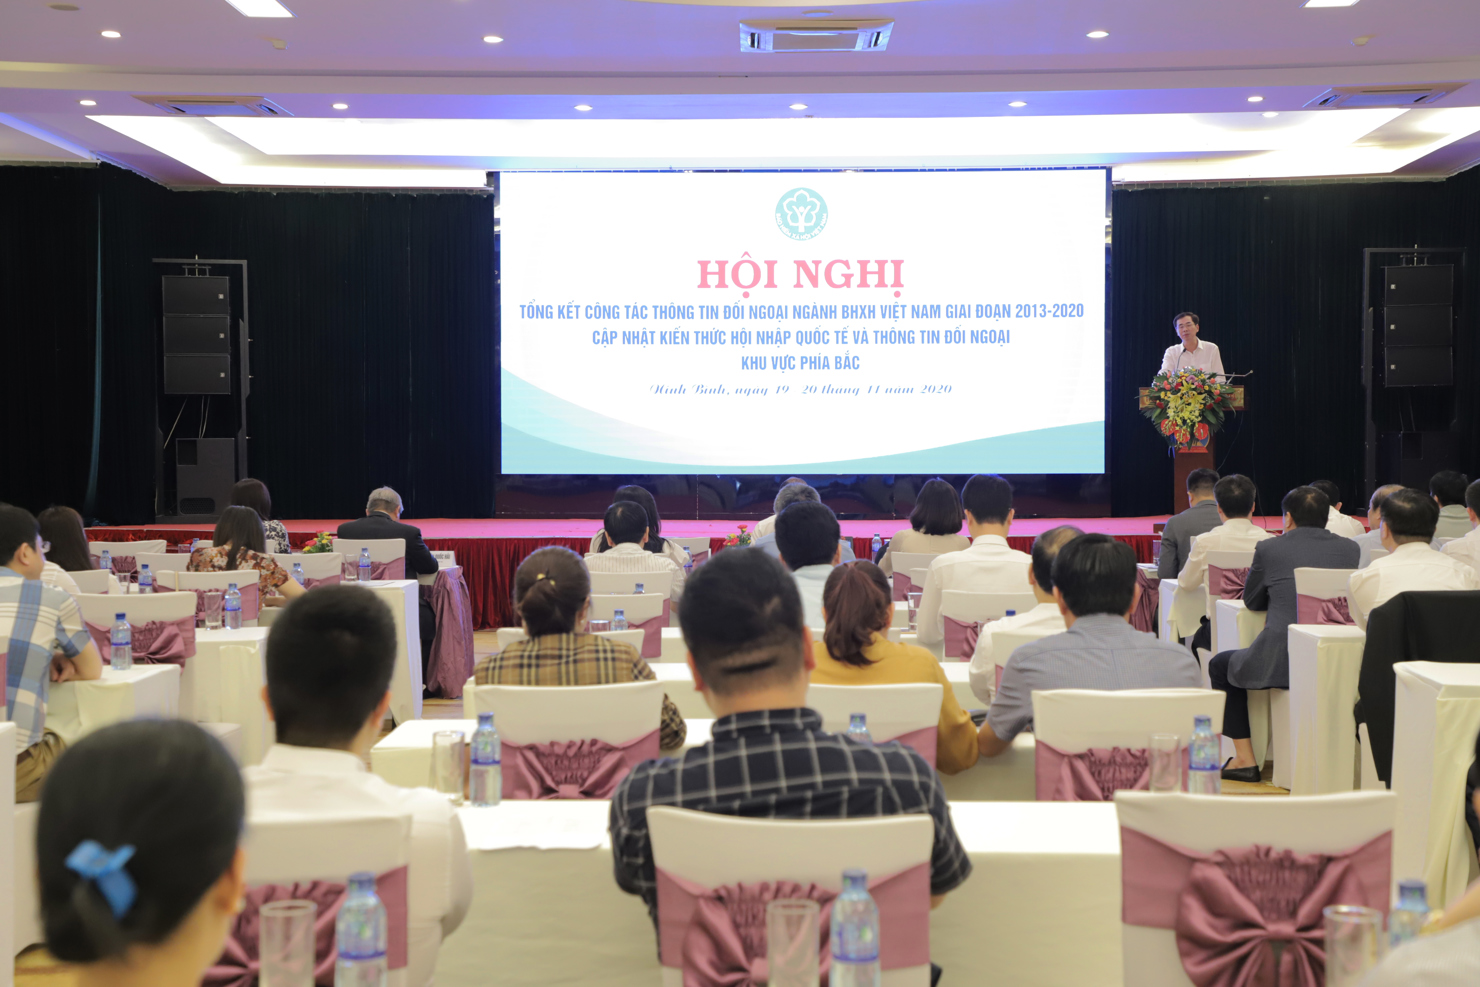 Toàn cảnh hội nghị ổng kết công tác thông tin đối ngoại ngành BHXH Việt Nam giai đoạn 2013-2020 (khu vực phía Bắc).